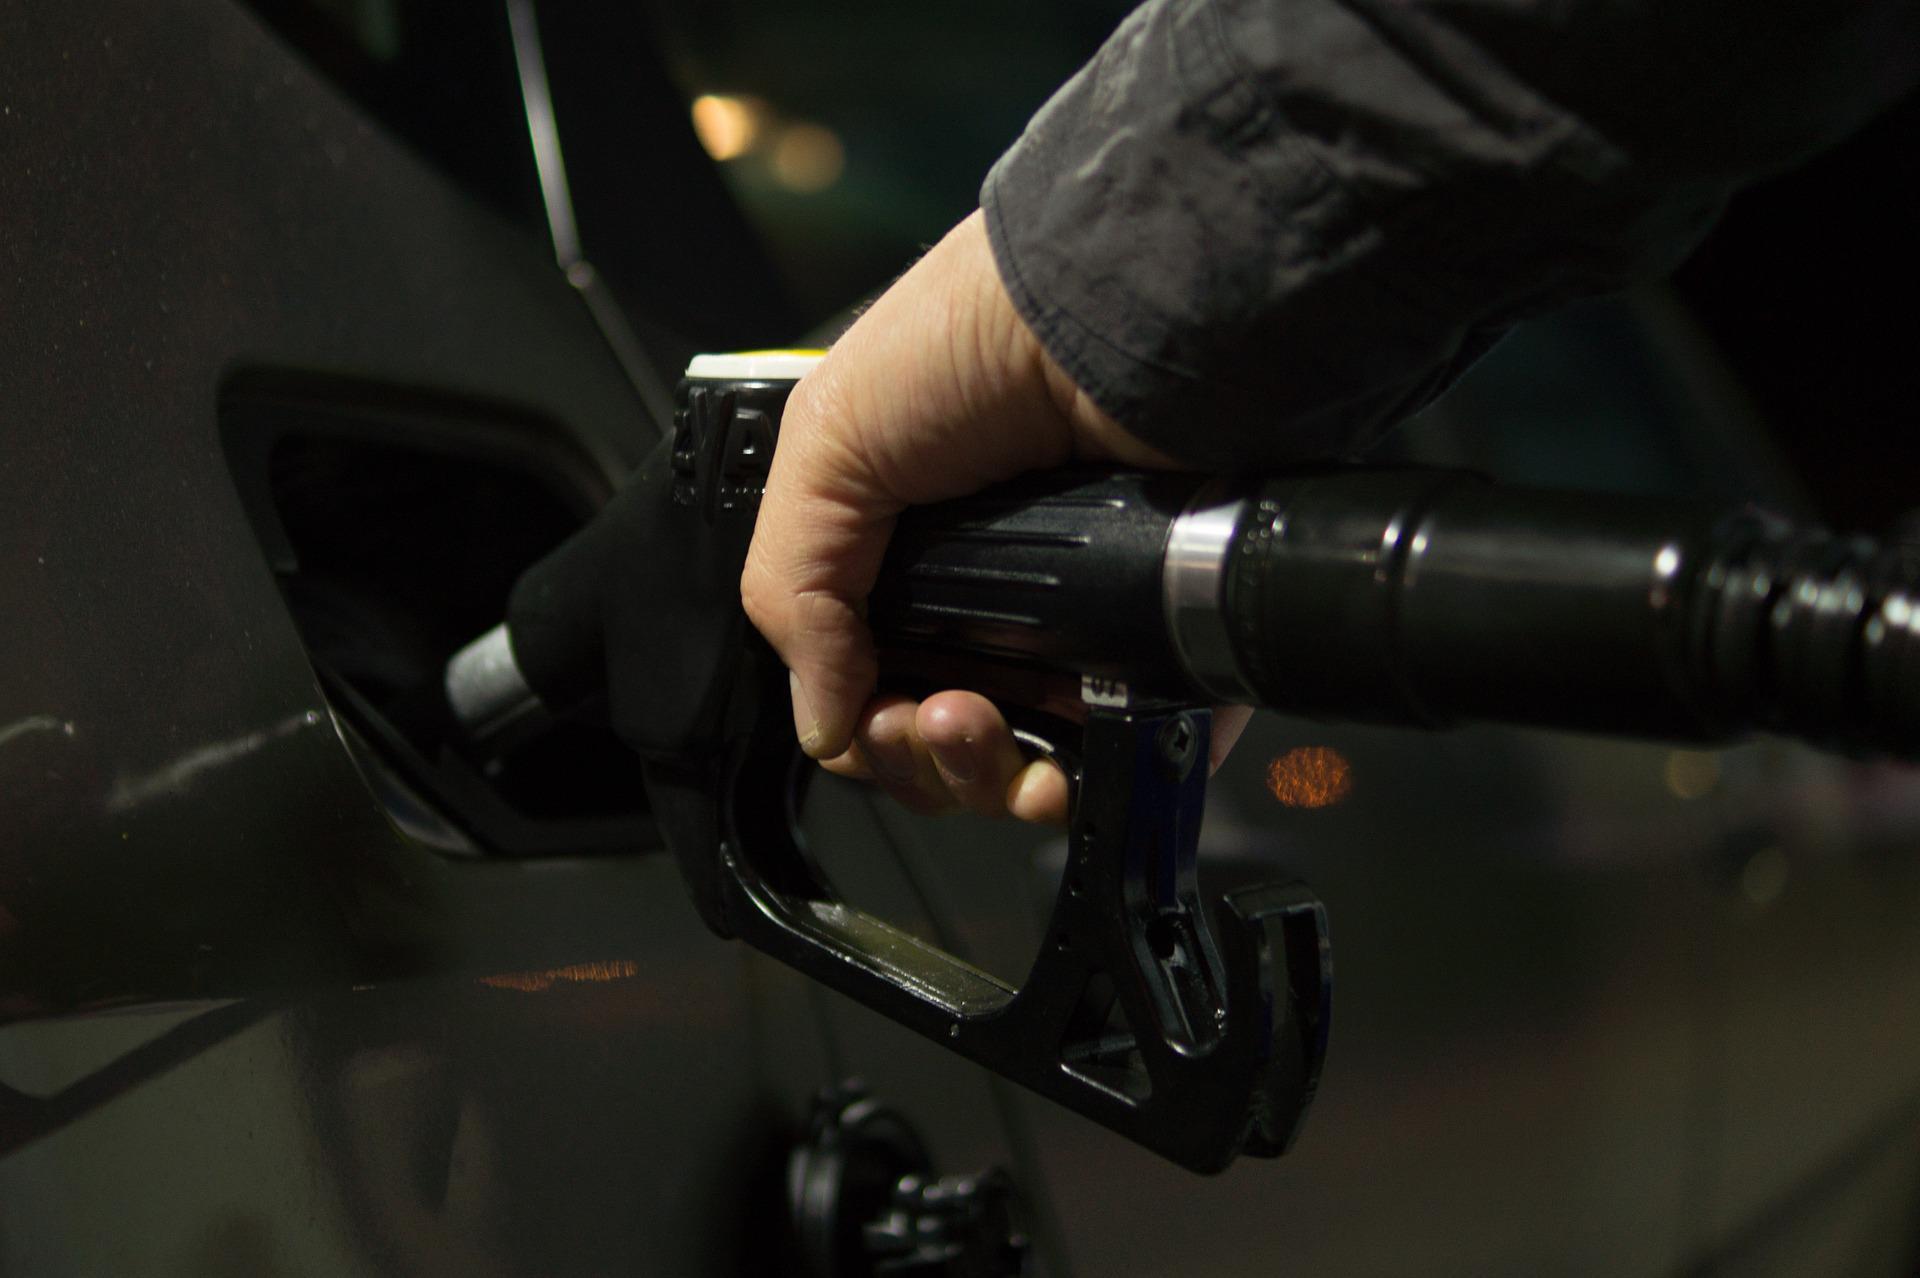 سعر البترول في الإمارات لشهر أغسطس 2022